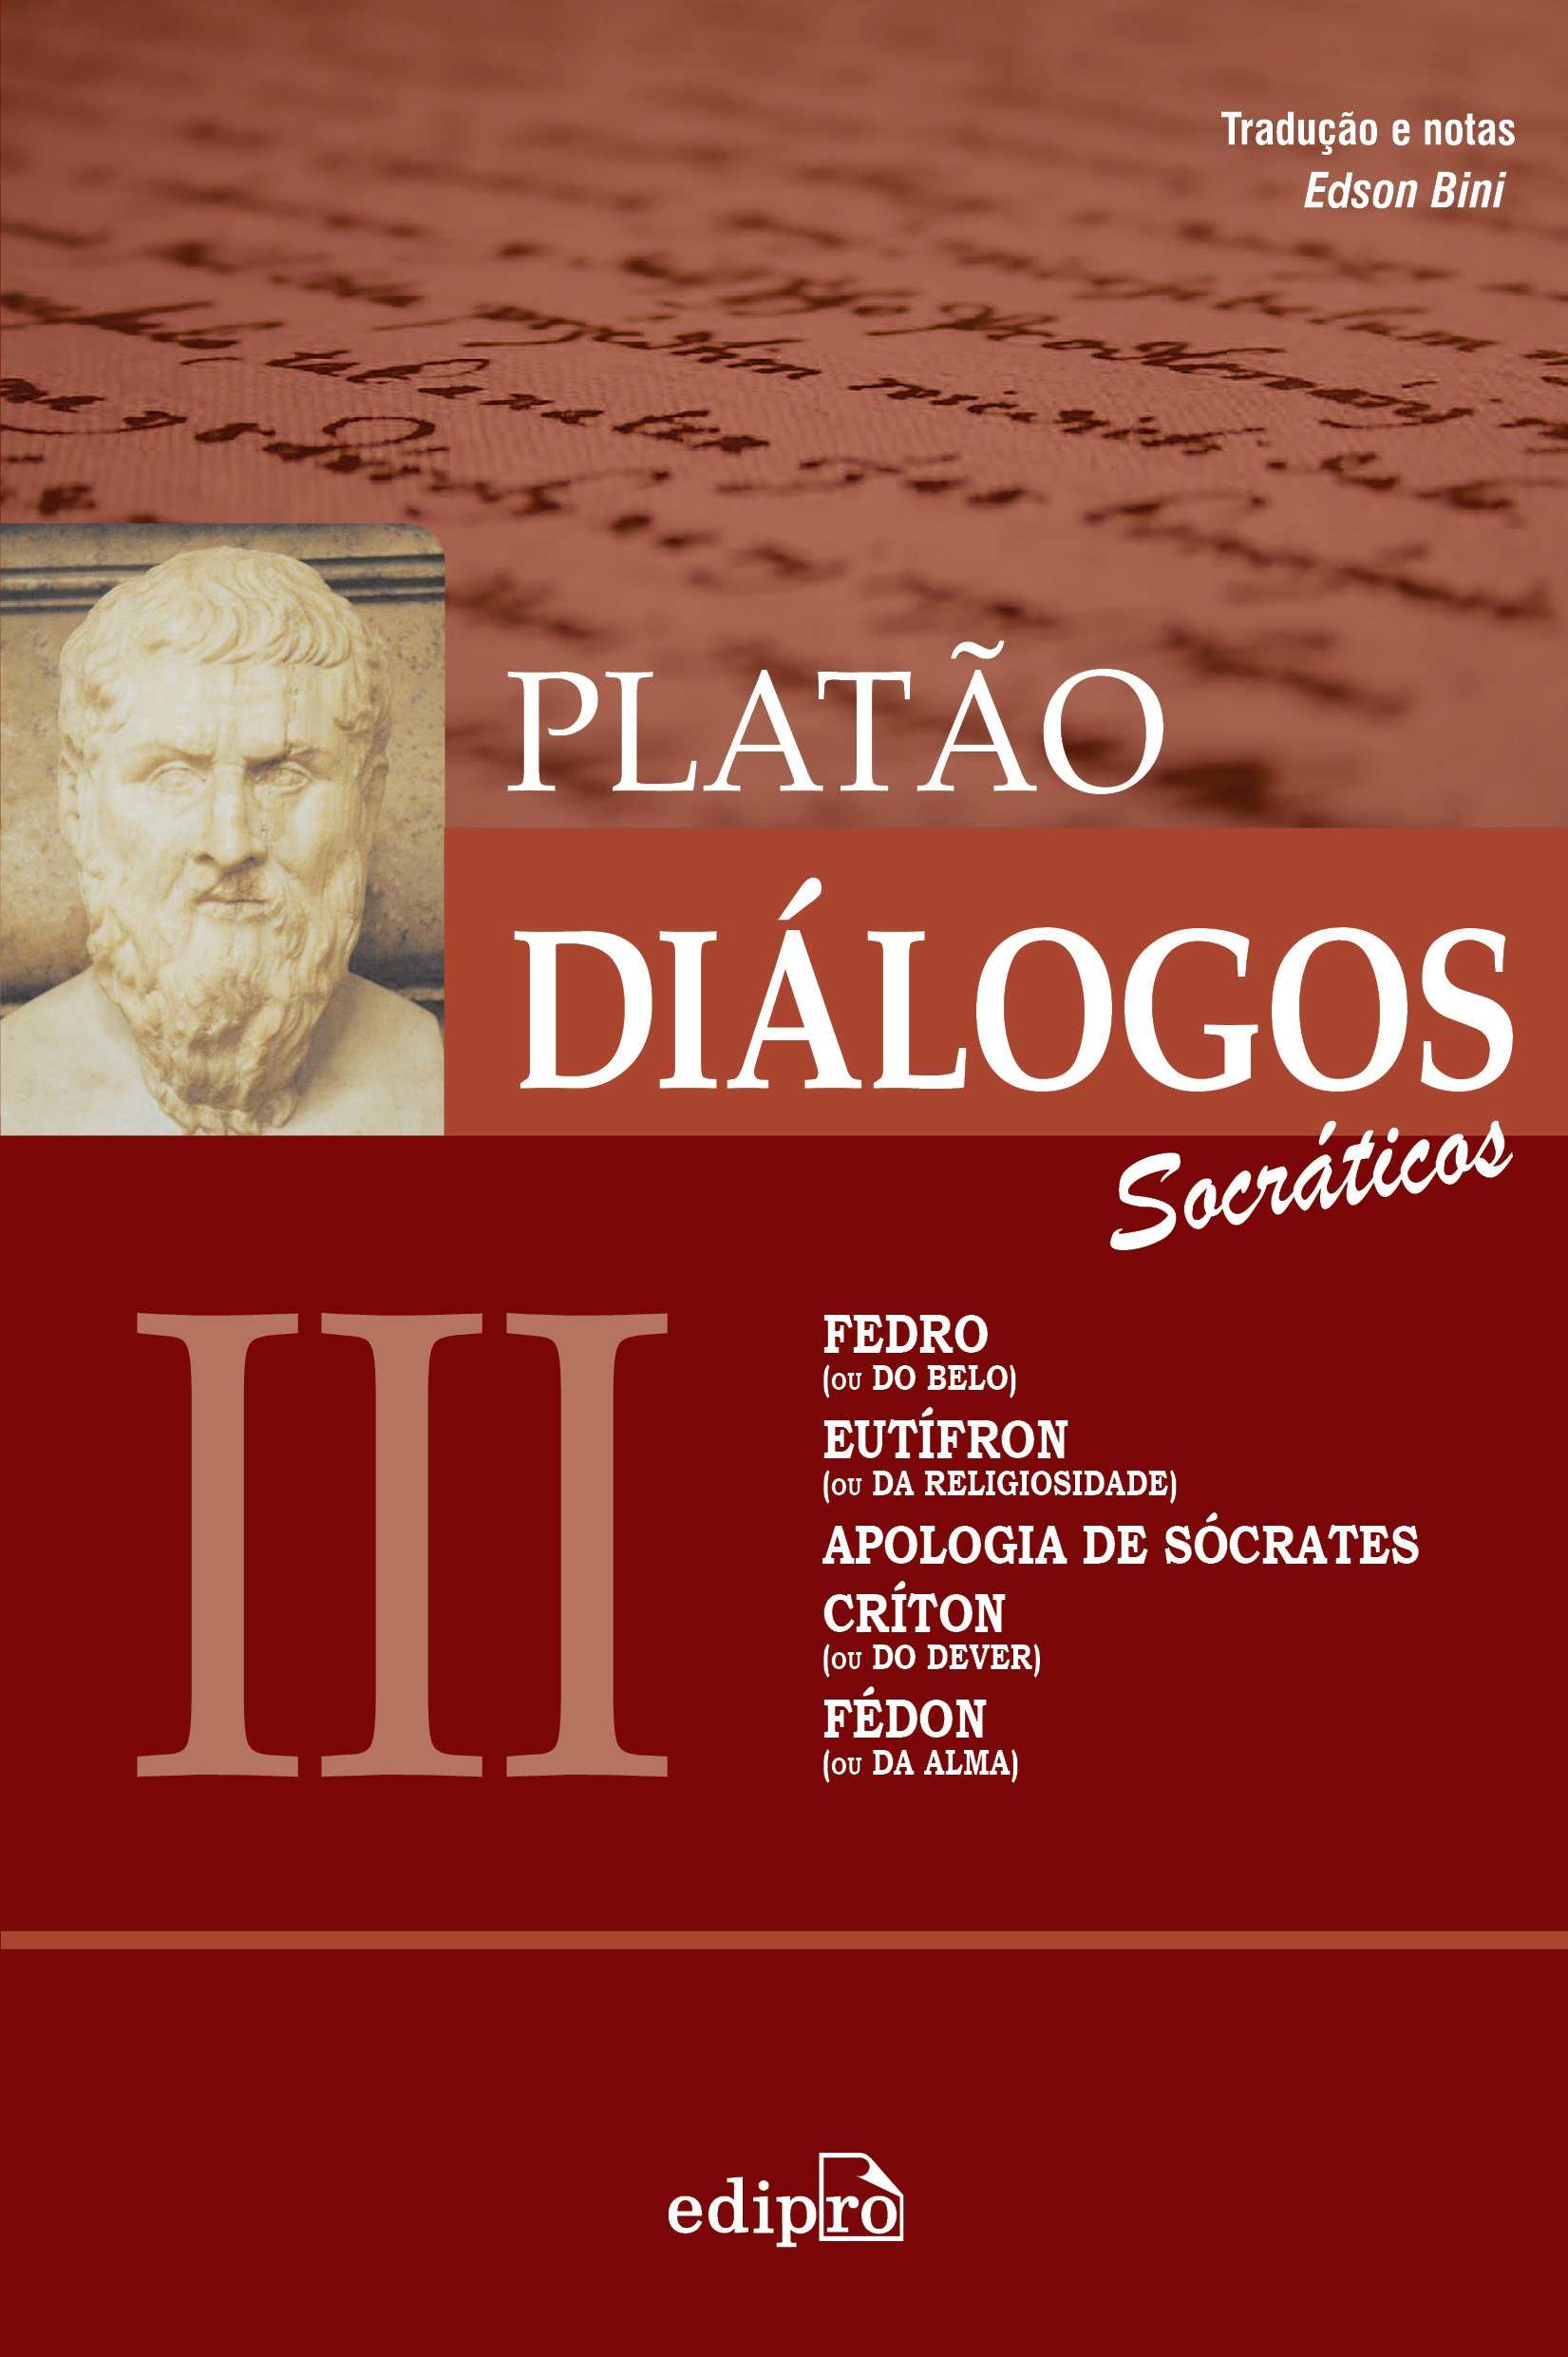 Diálogos 3 - Fedro, Eutifron, Apologia Sócrates